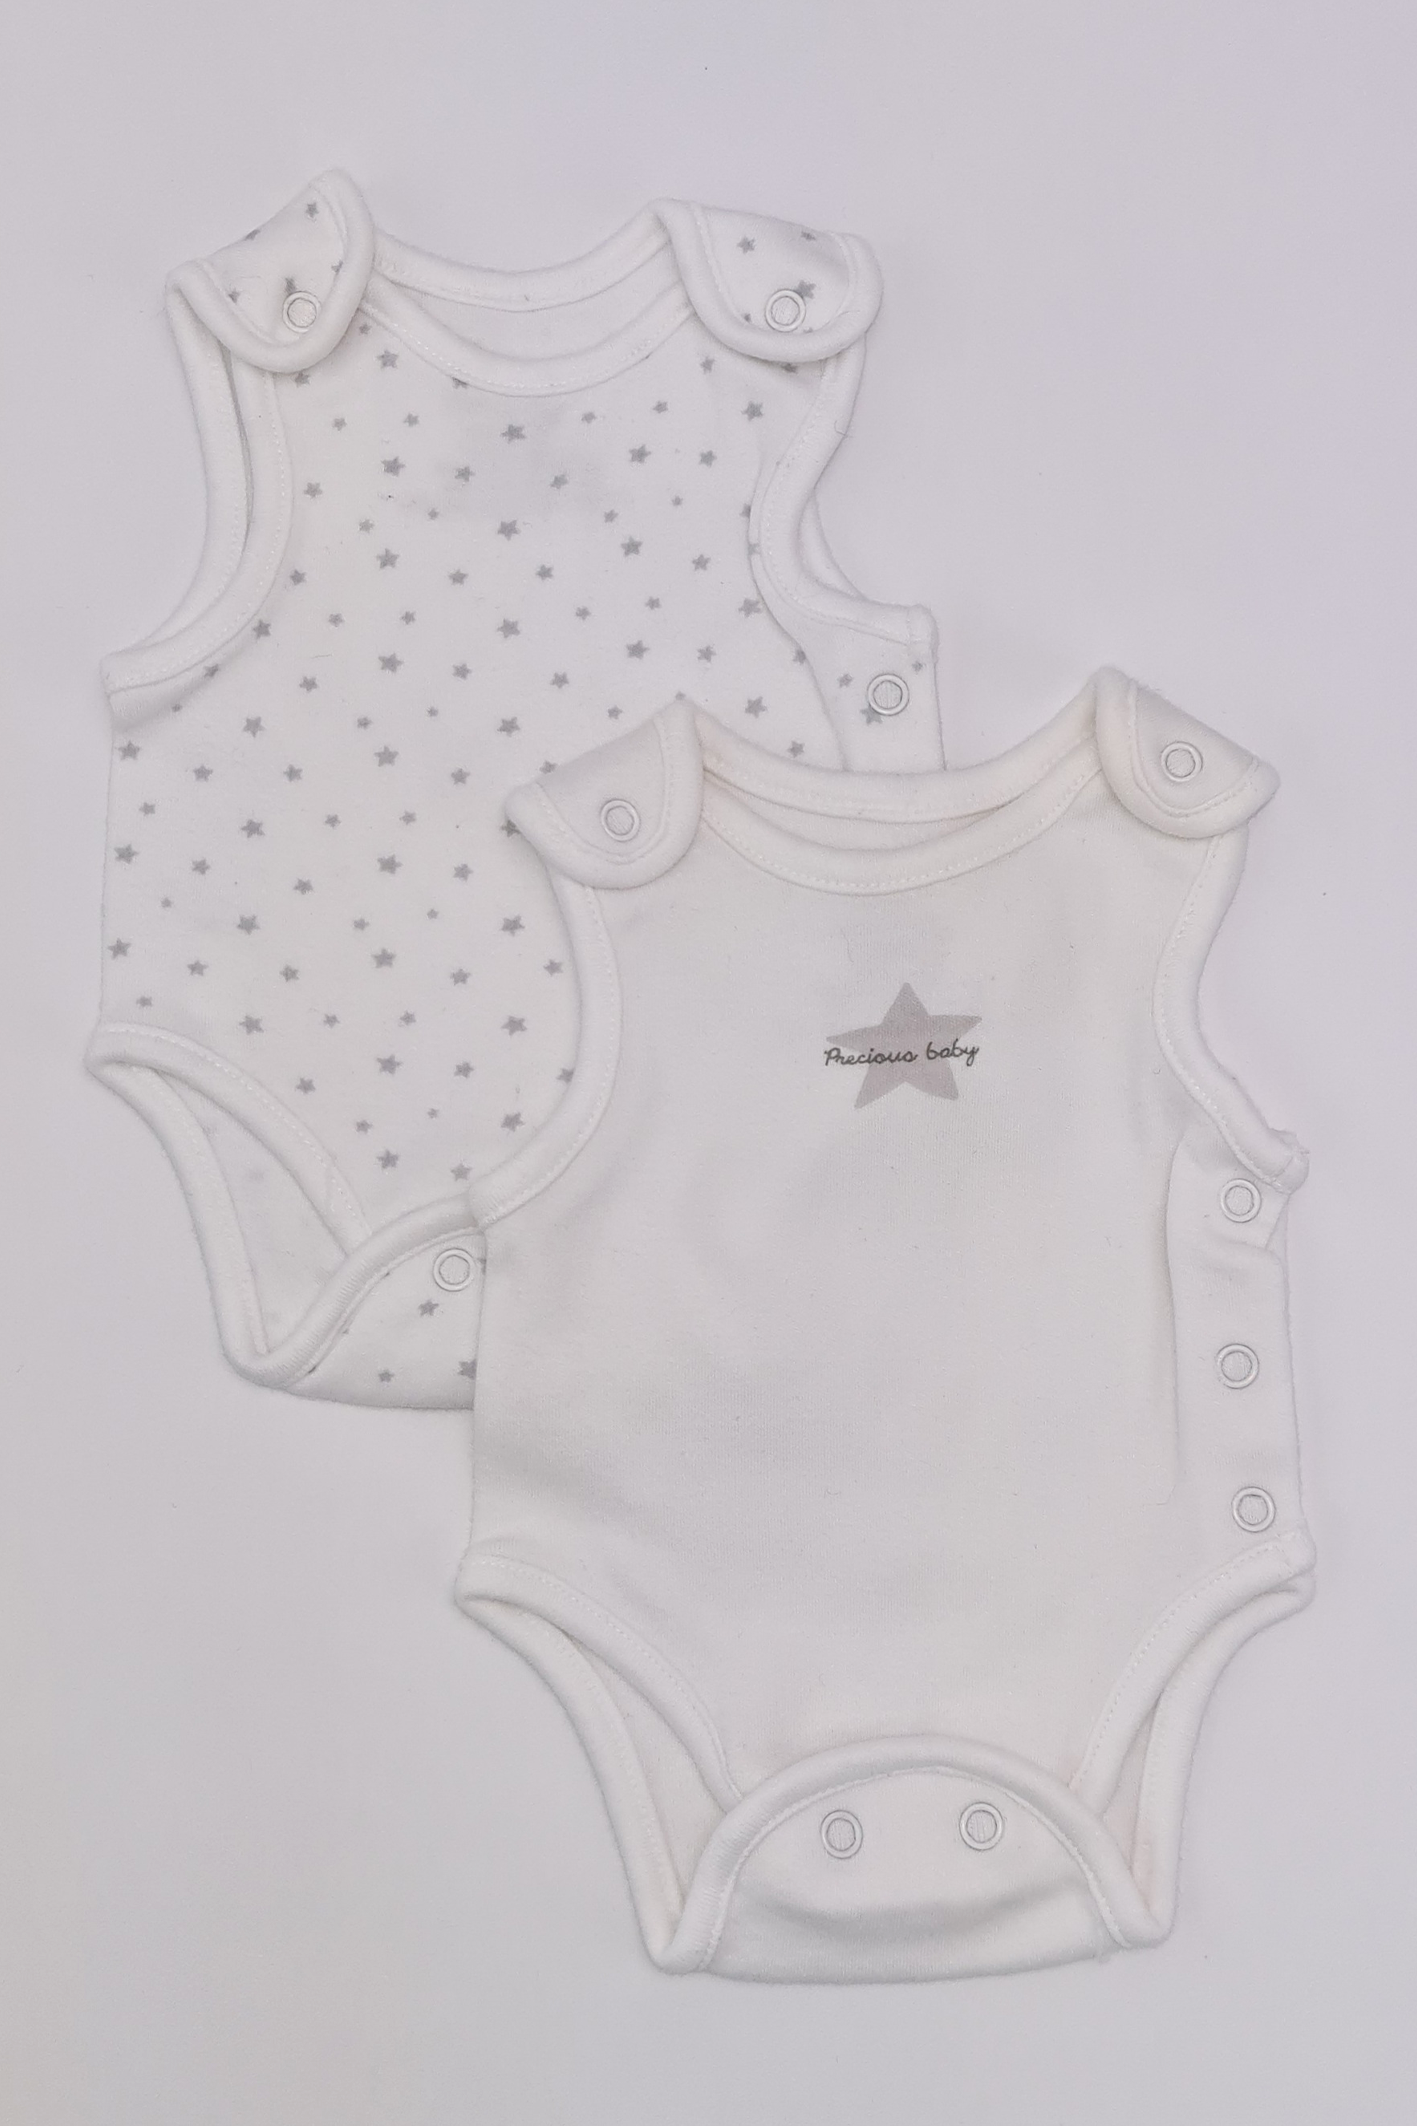 Bébé prématuré (5 lb) - Ensemble body 'Precious Baby' (George)